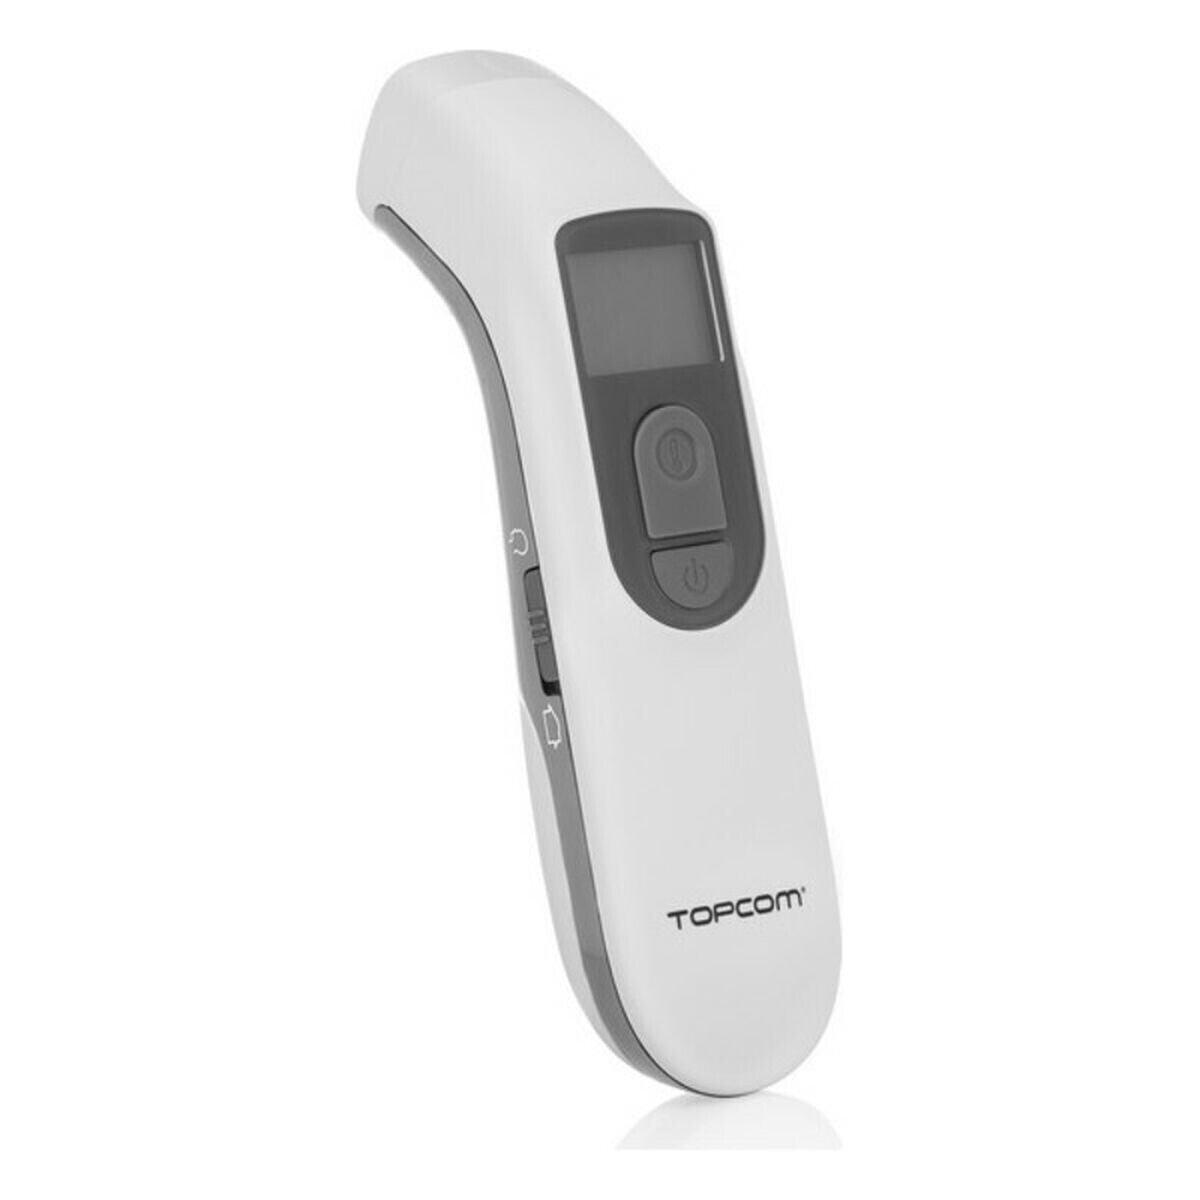 Topcom TH-4676 цифровой термометр для тела Дистанционное измерение Серый, Белый Лоб